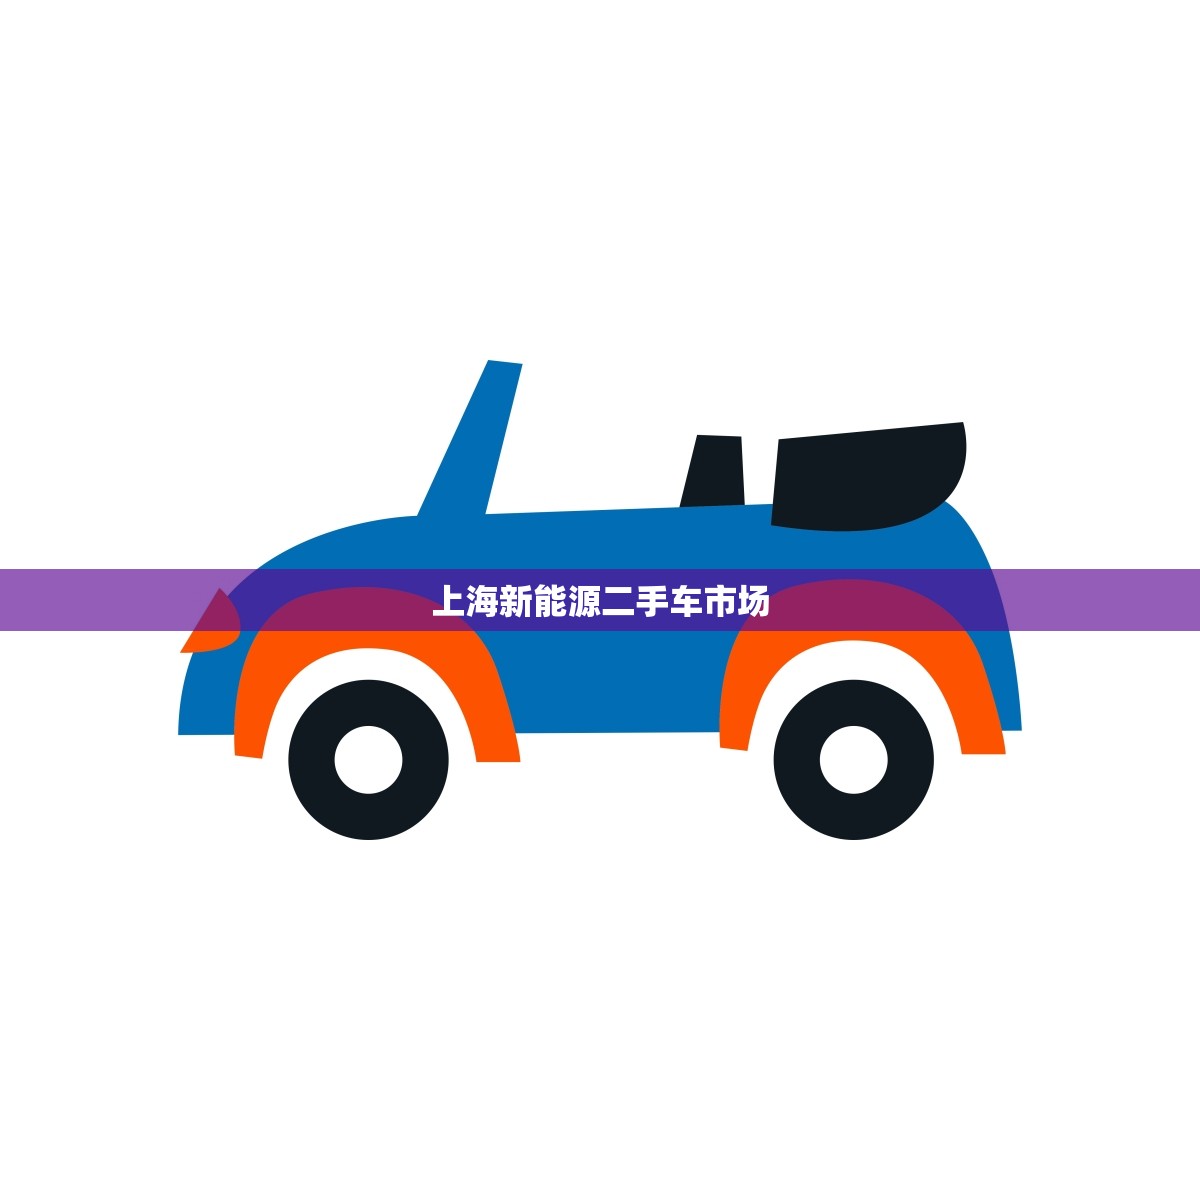 上海新能源二手车市场(掀起绿色交通新浪潮)